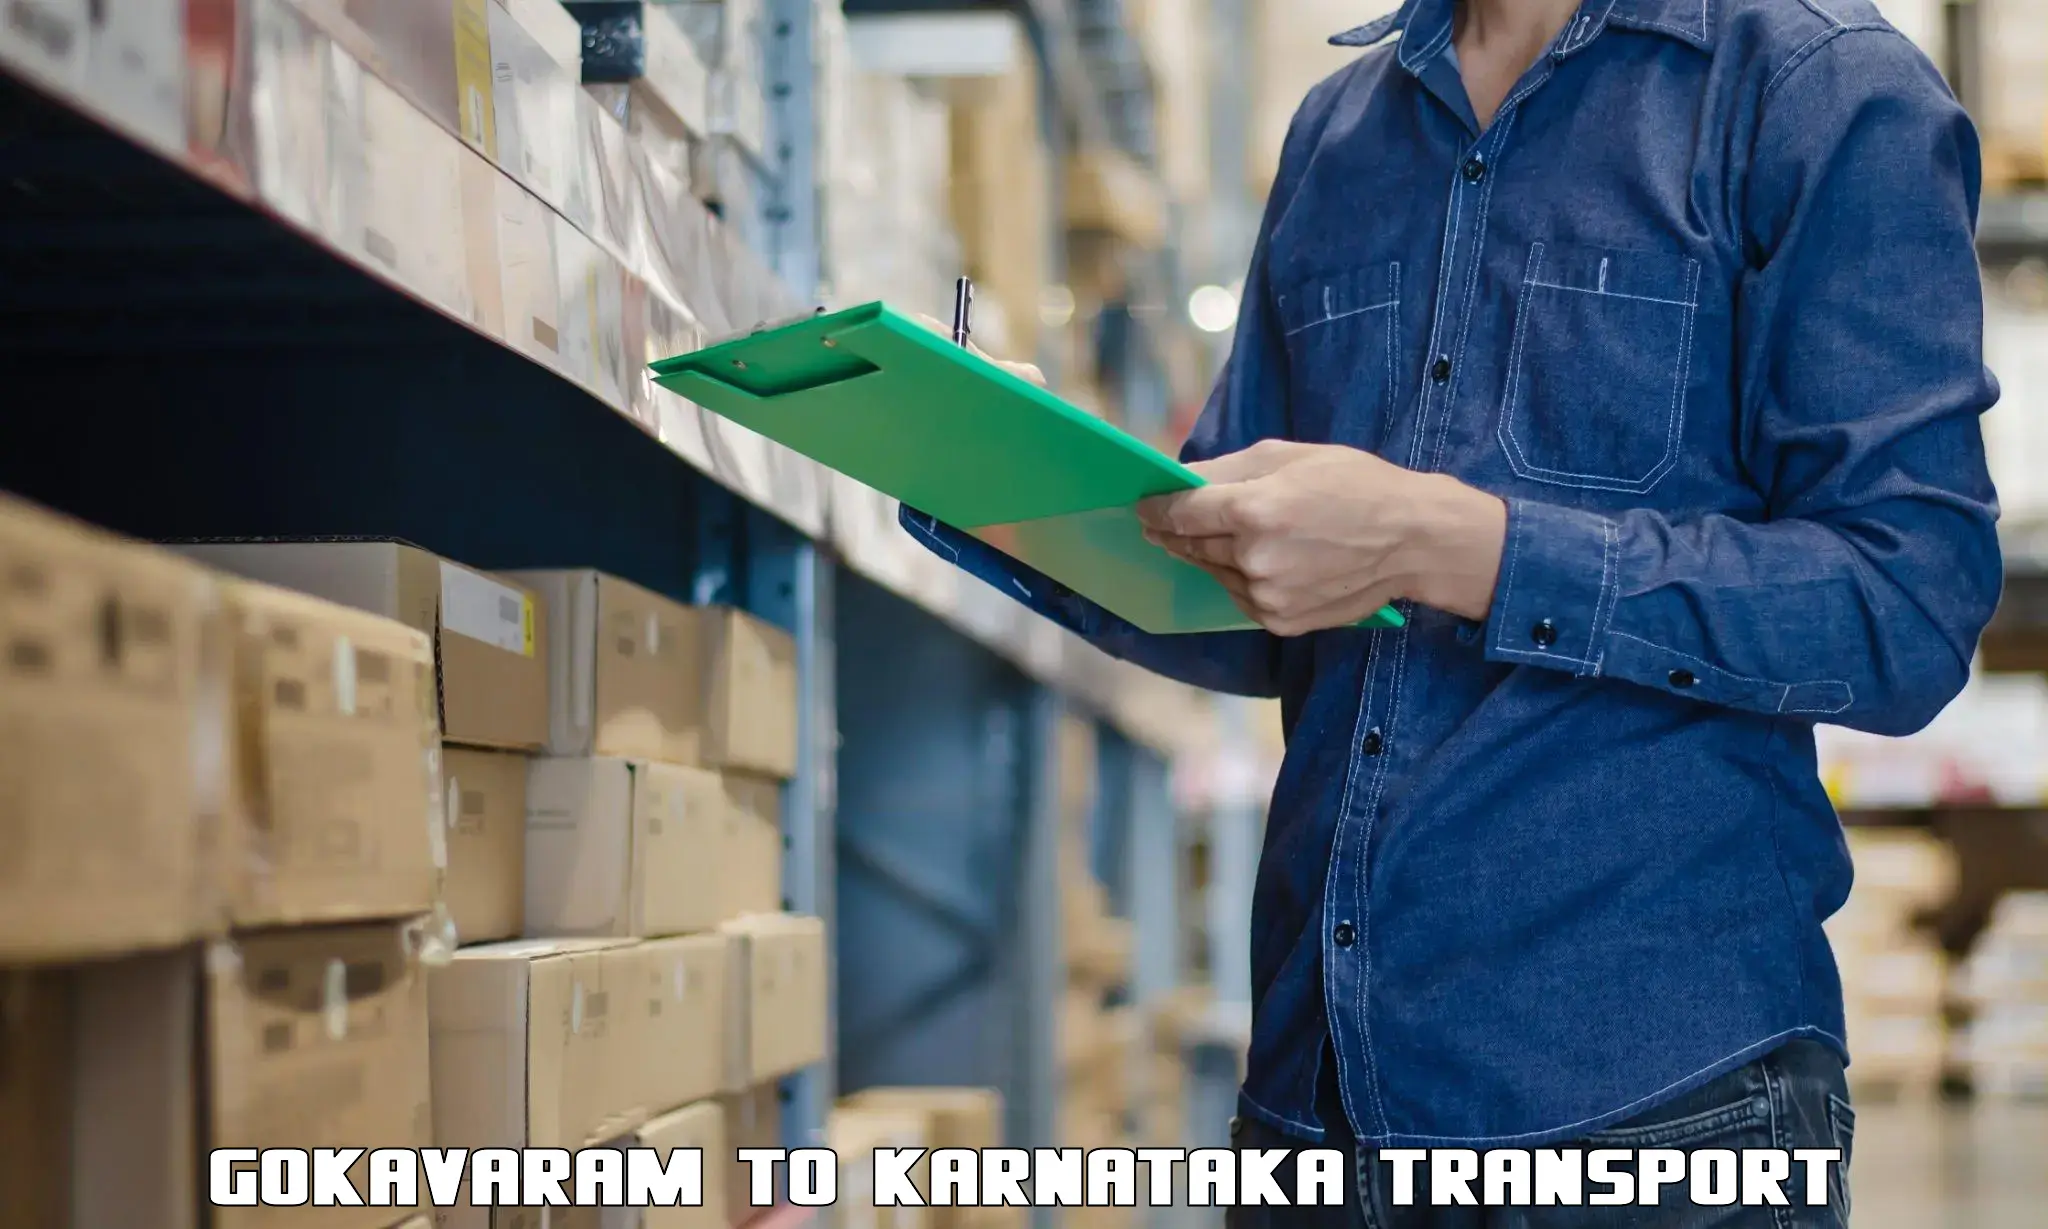 Container transport service Gokavaram to Kushalnagar